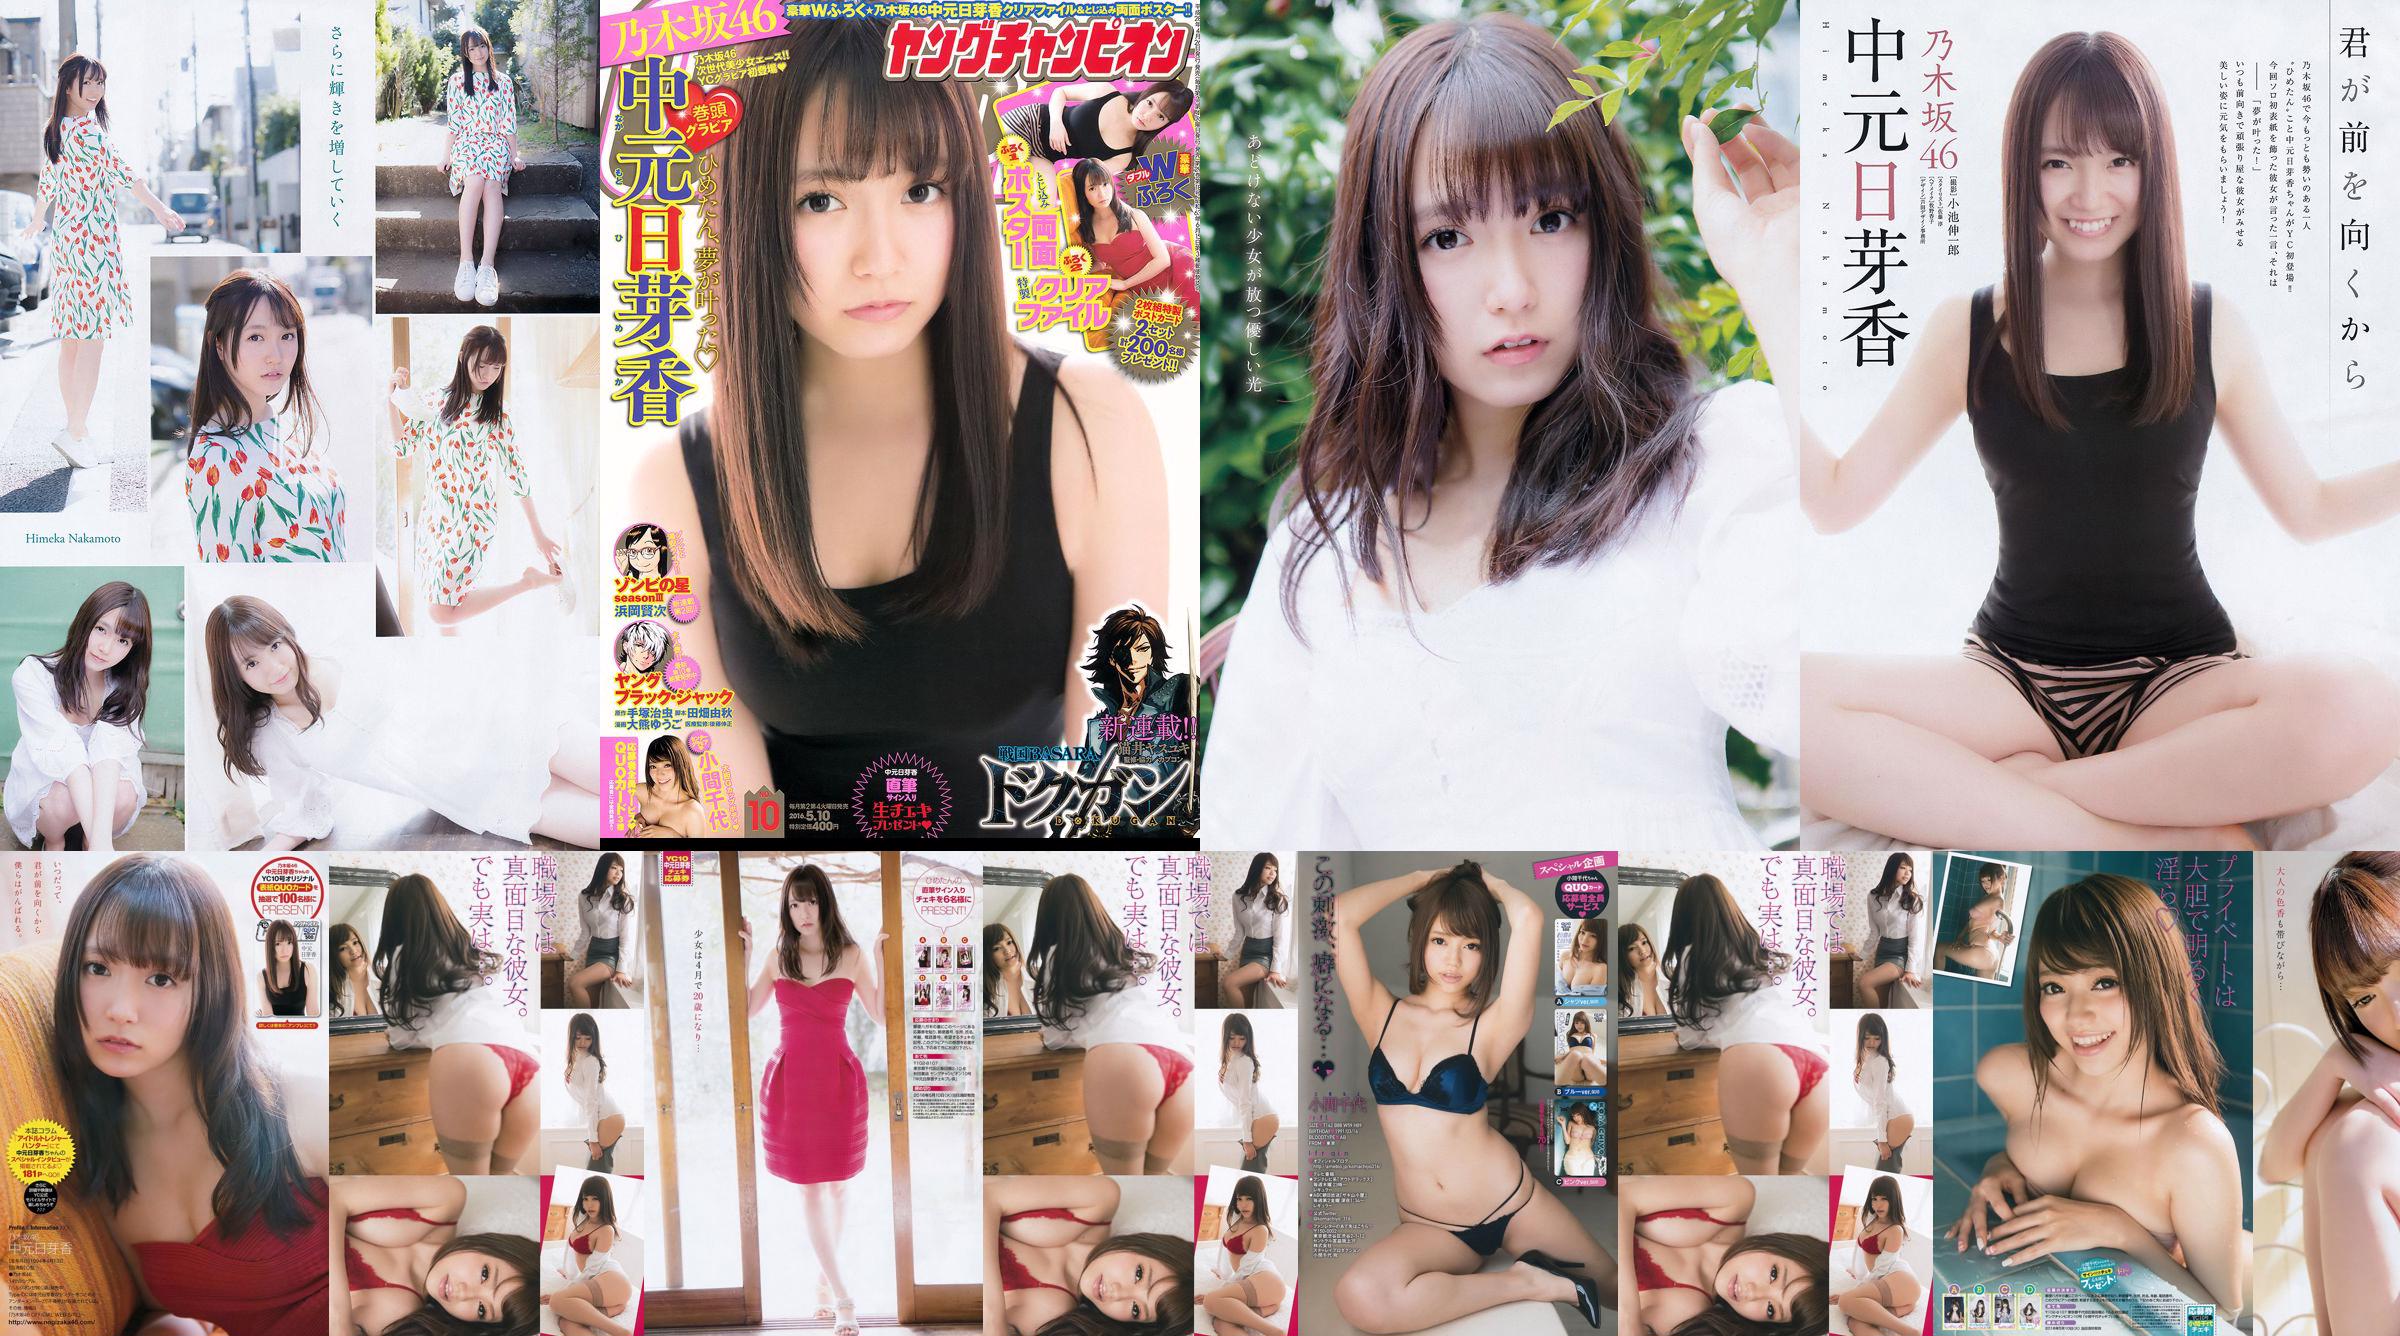 [Joven Campeona] Nakamoto Nichiko Koma Chiyo 2016 No.10 Photo Magazine No.f0c9b6 Página 6